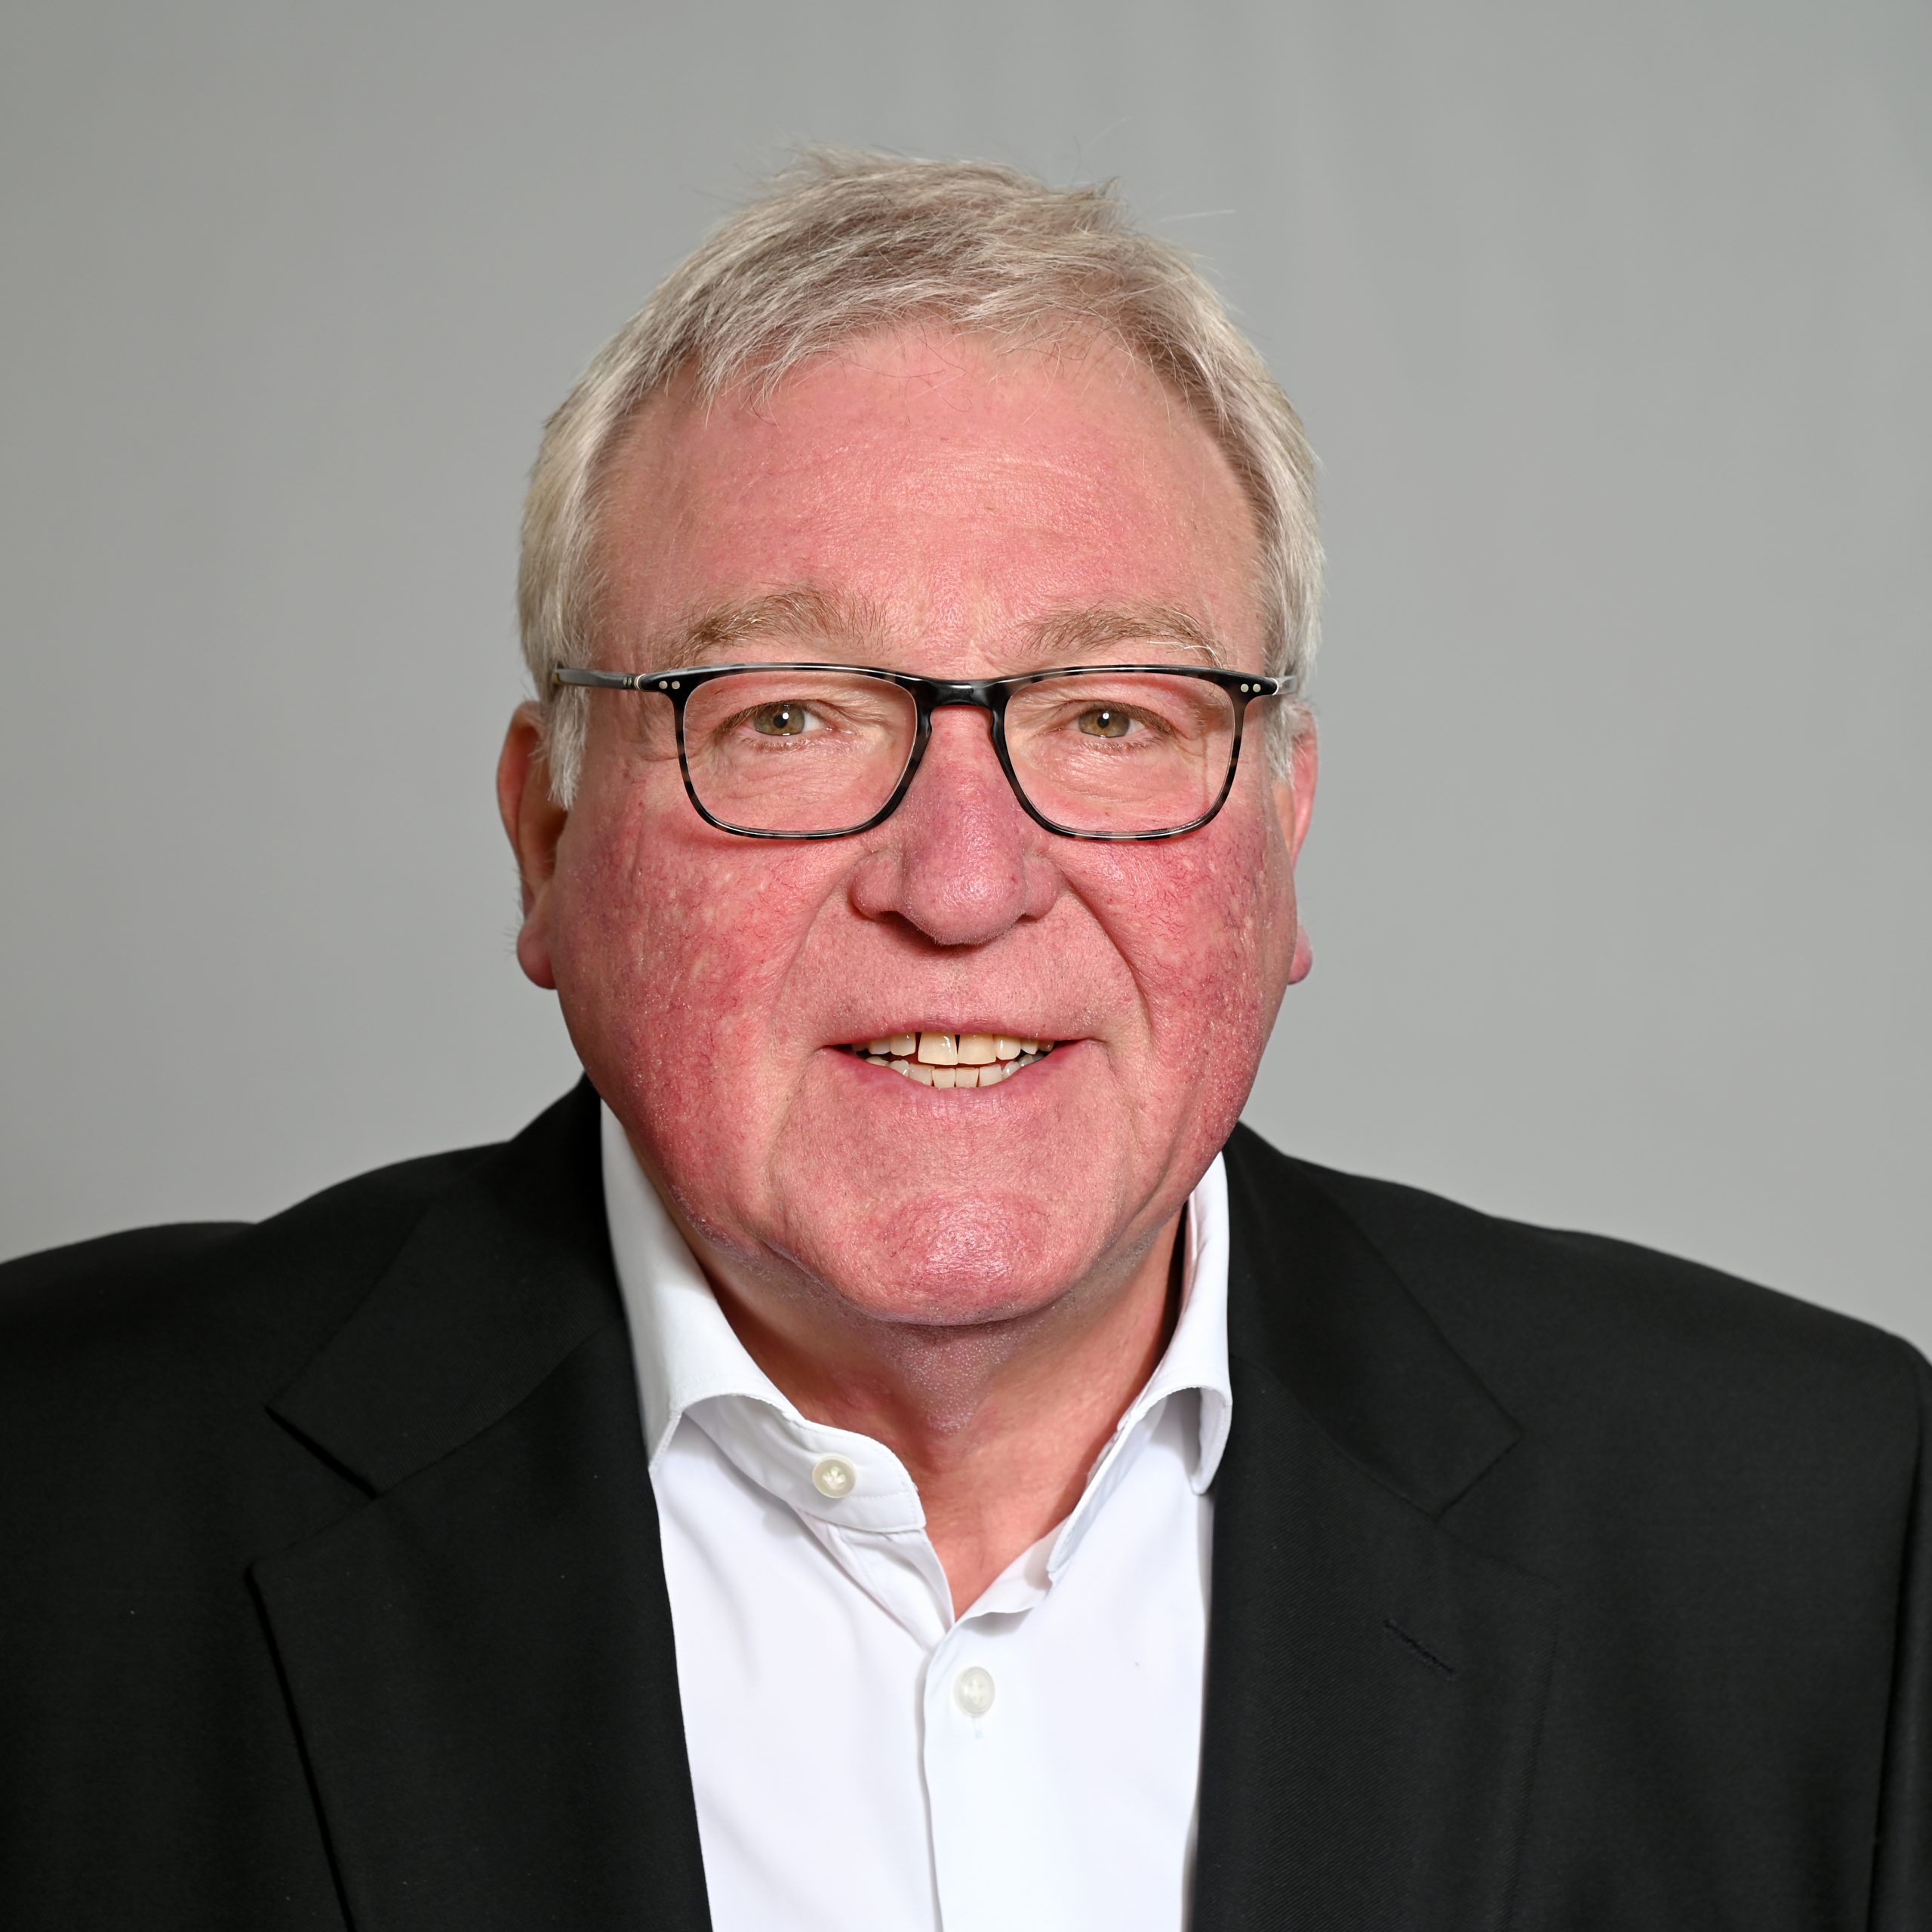 Werner Schilli